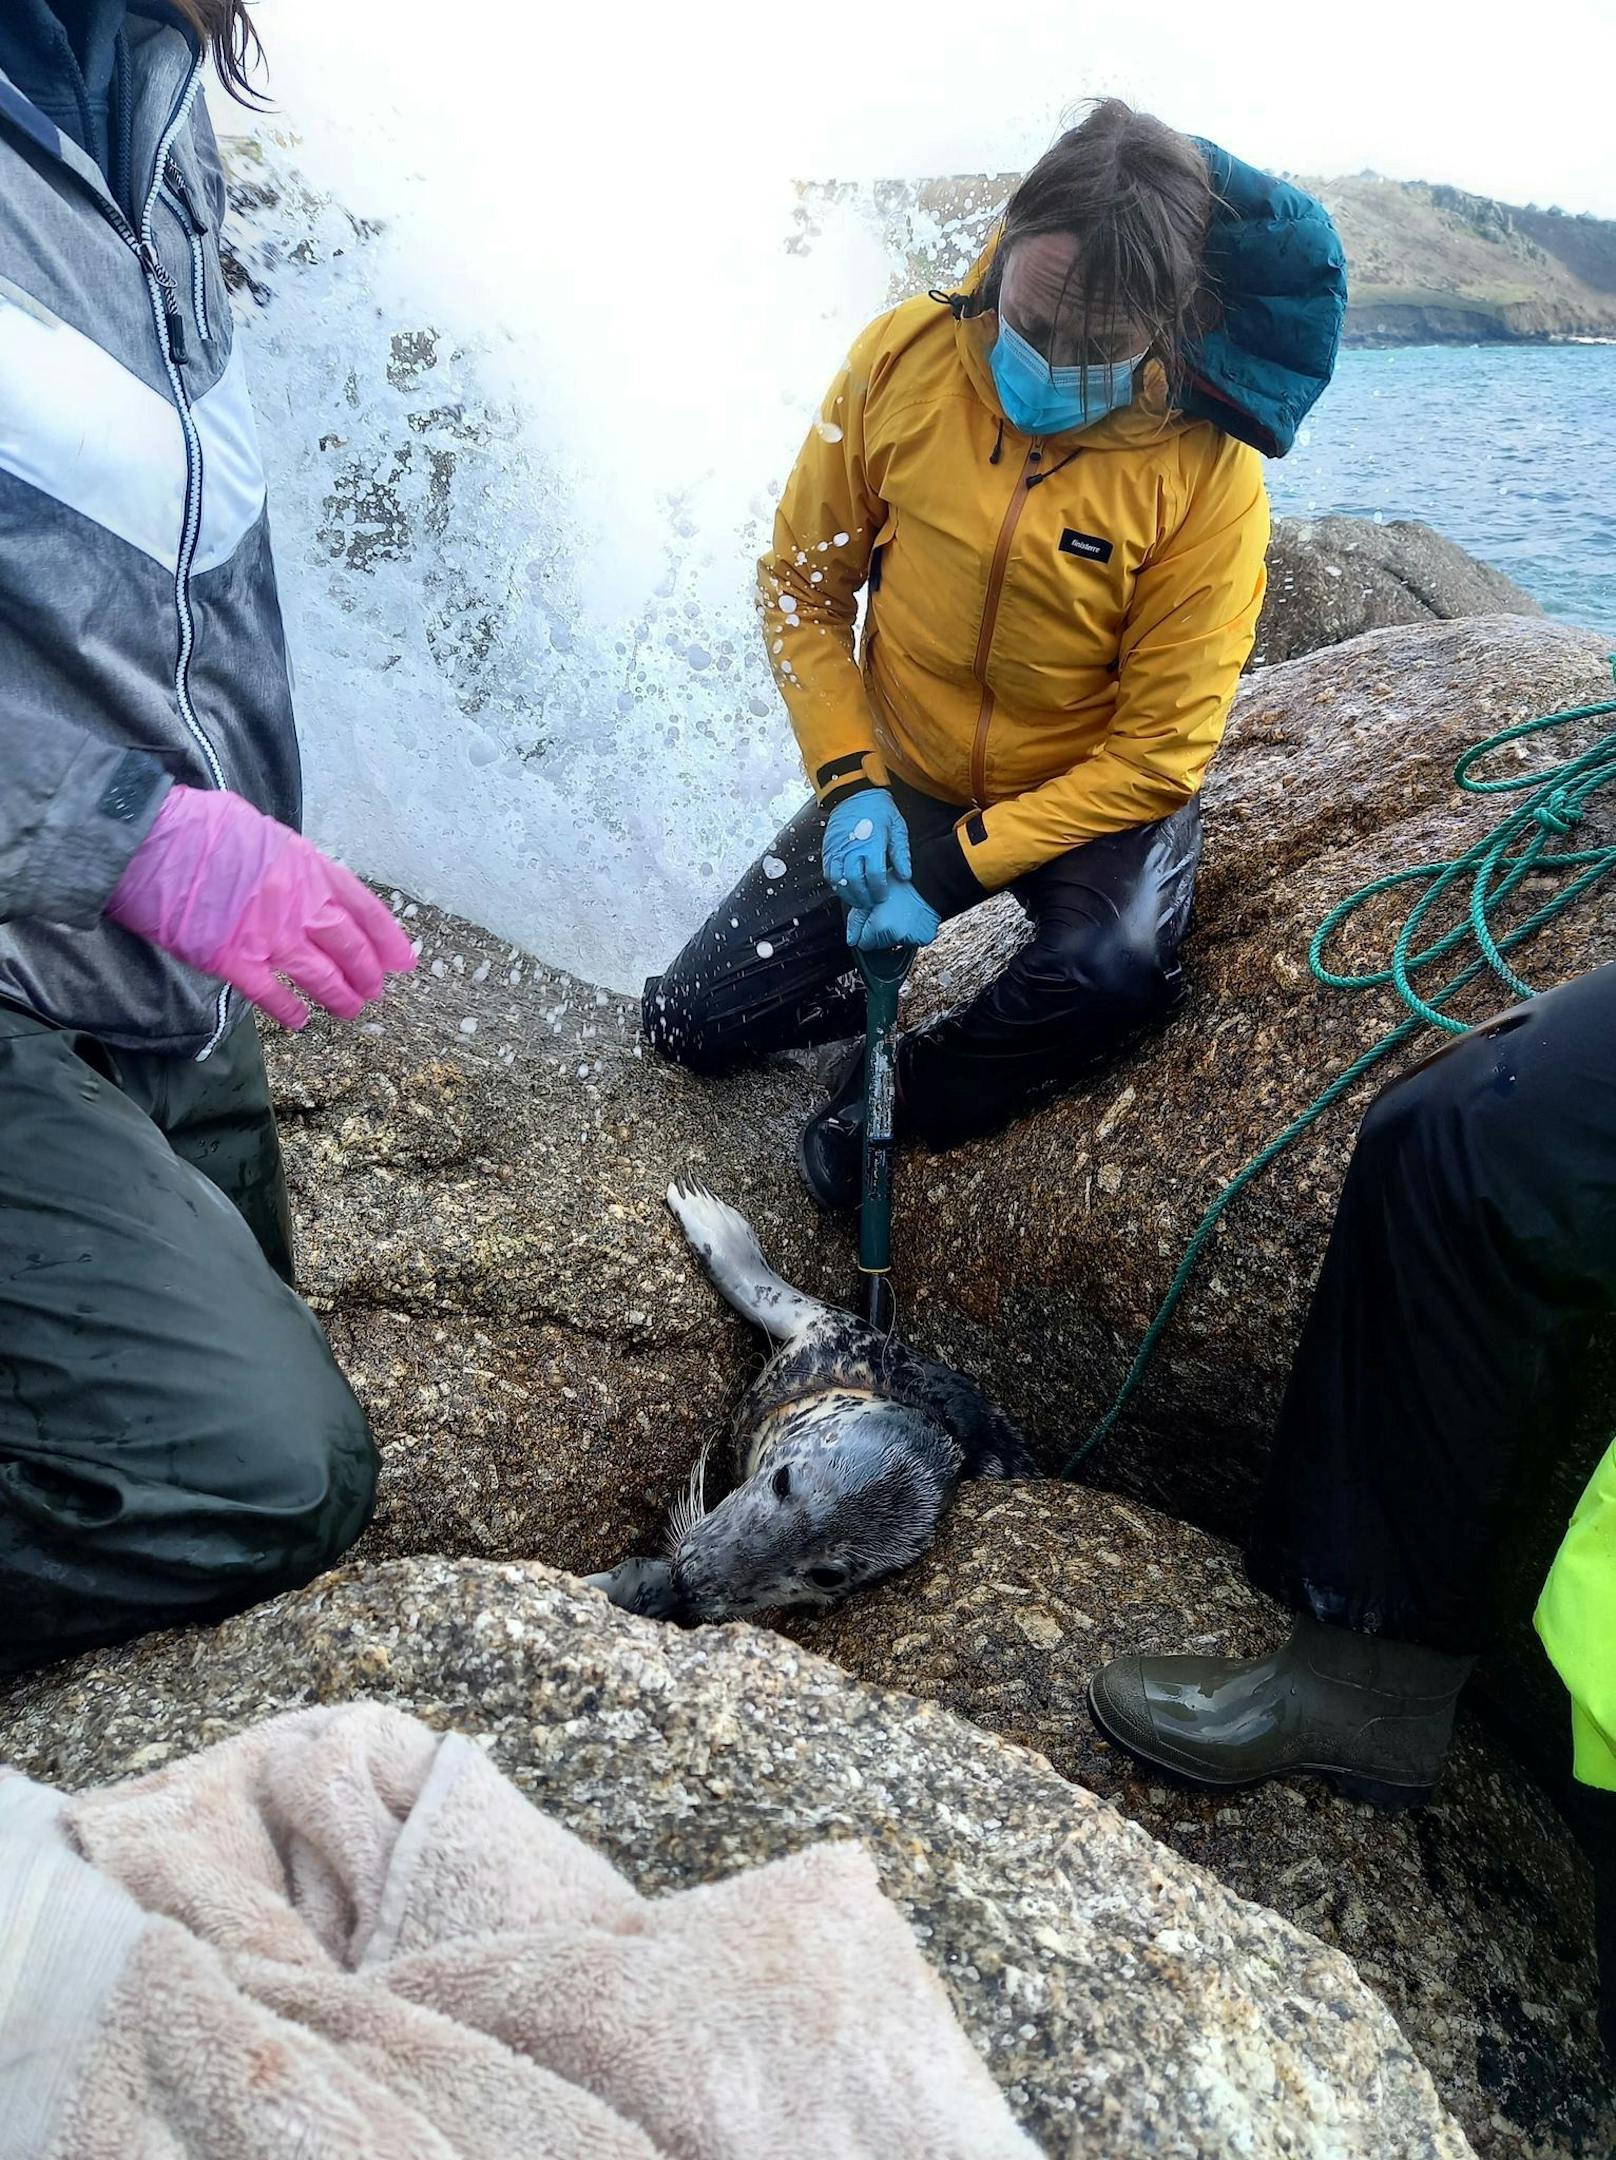 Mehr als zwei Jahre hatte die Rettung der verletzten Robbe gedauert. 